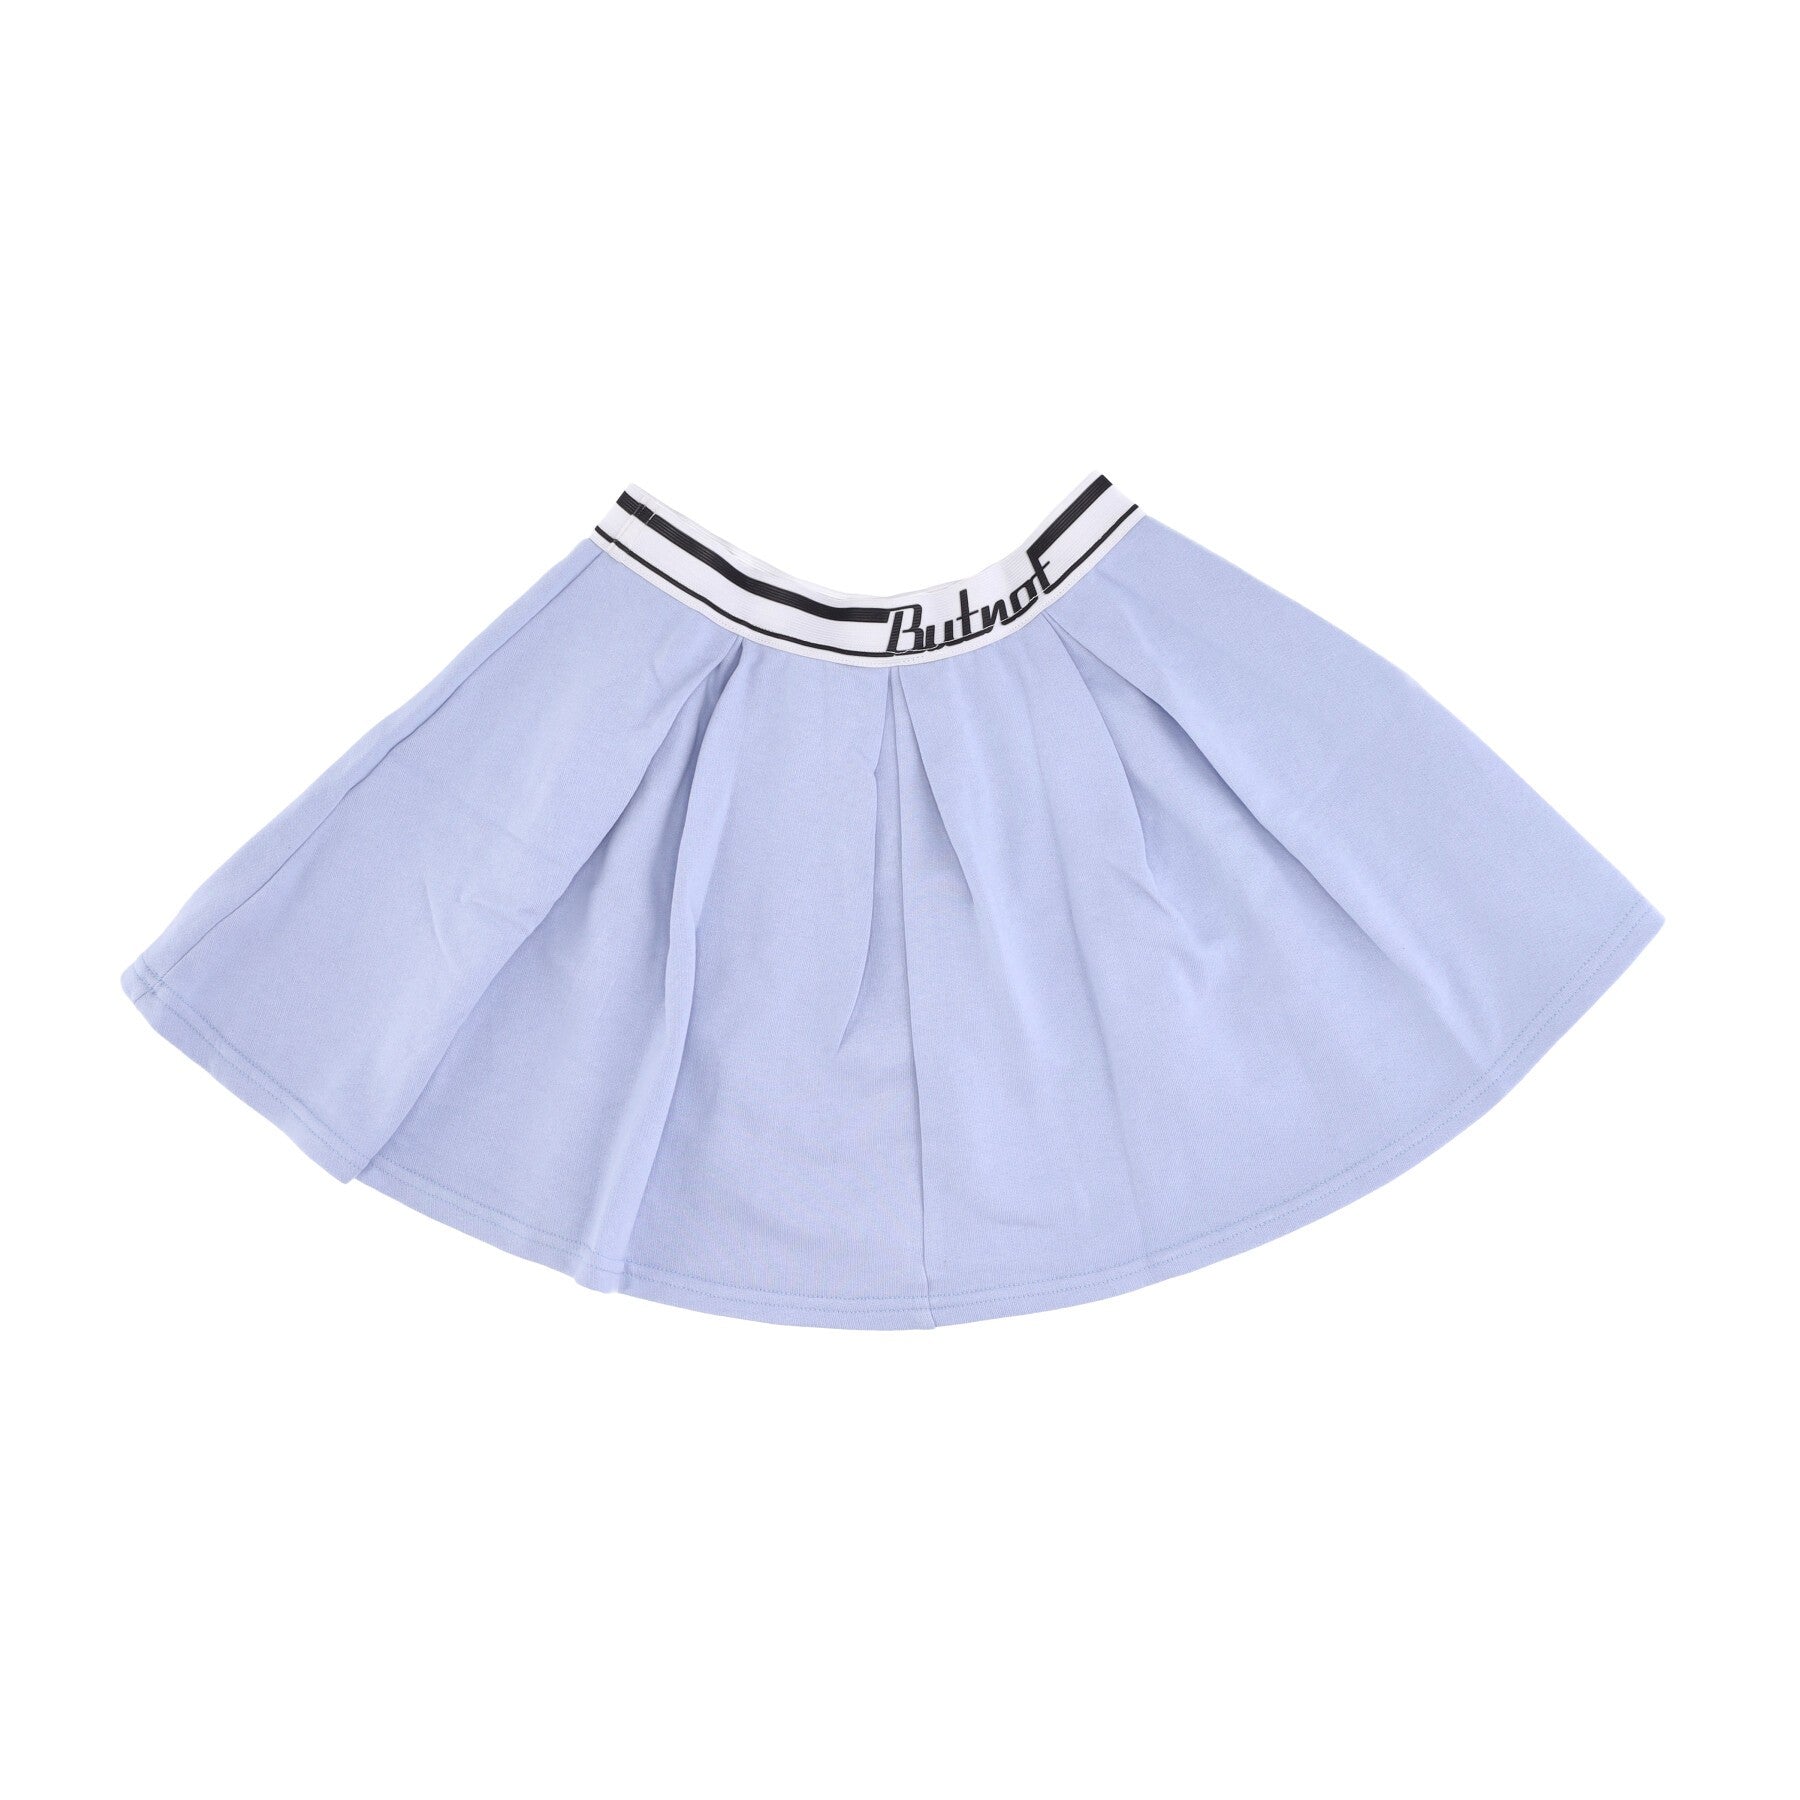 Short Skirt Women's Tennis Skirt Light Blue